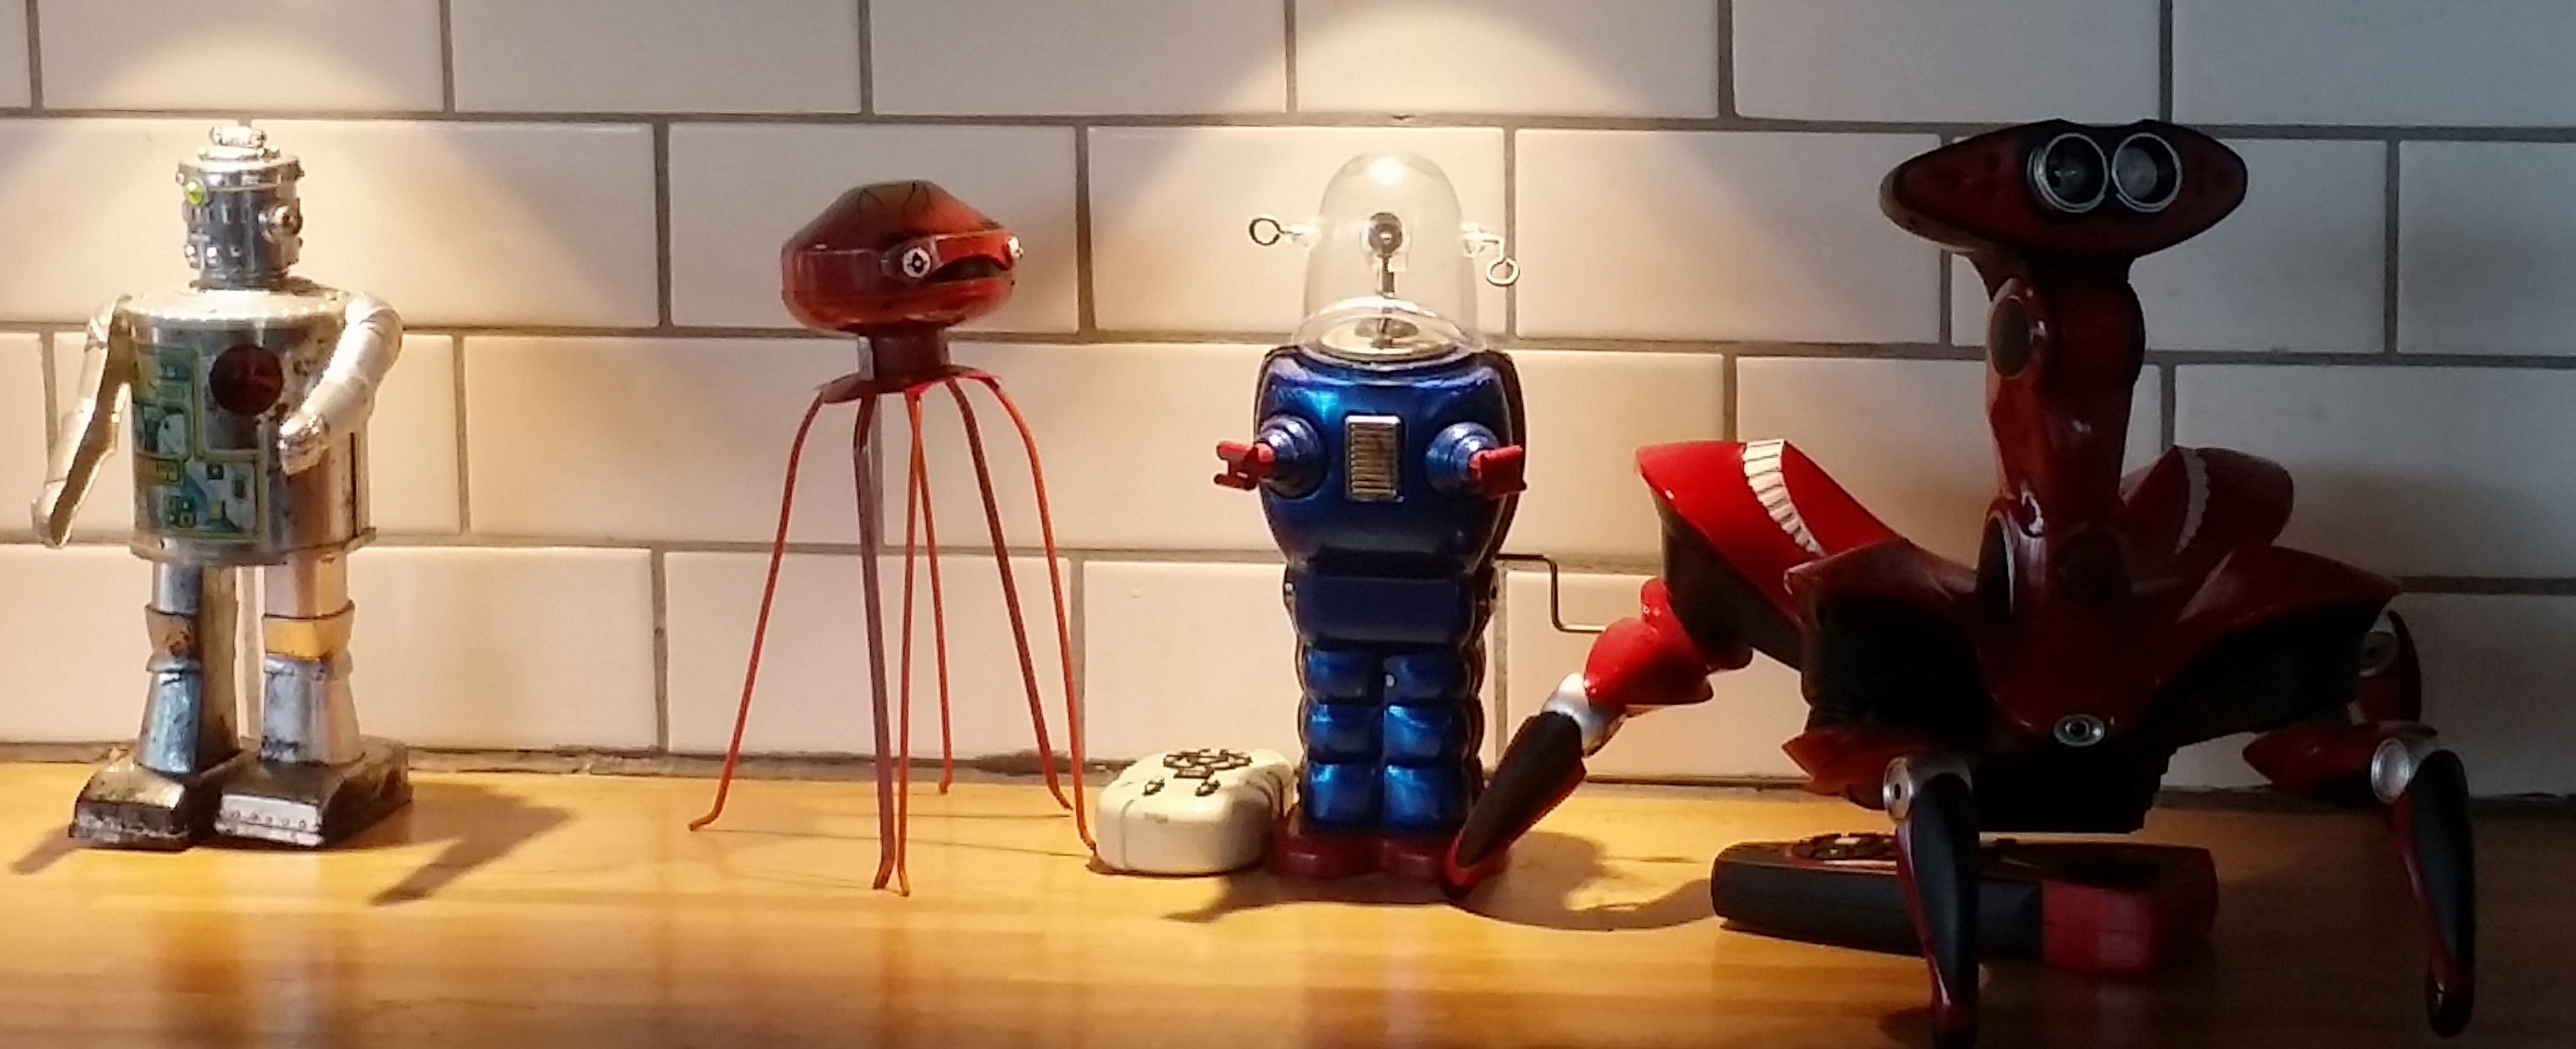 Robots - Part 1